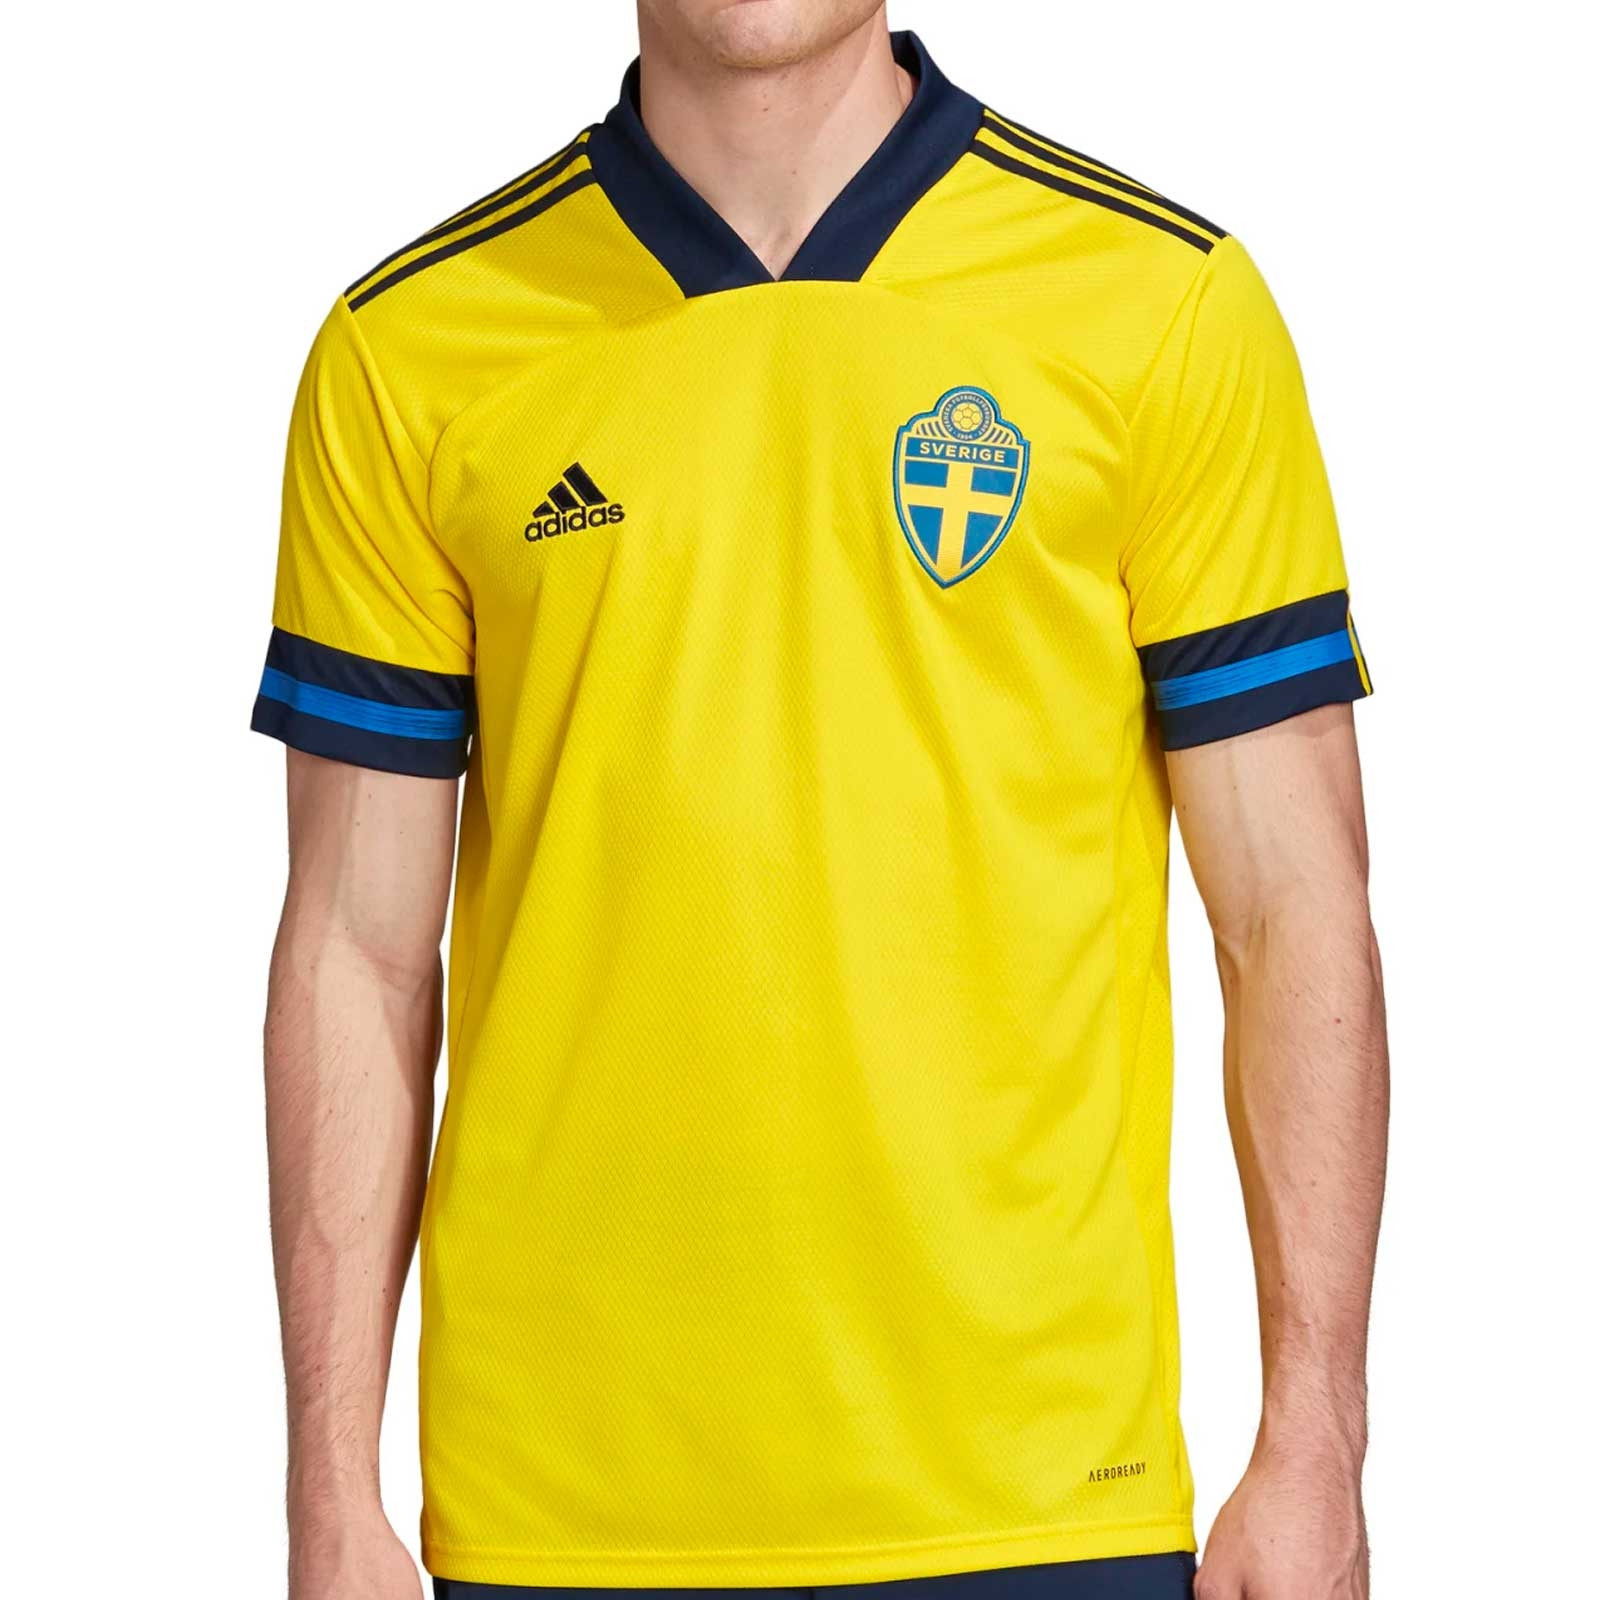 Camiseta adidas Suecia 2020 2021 amarilla futbolmania